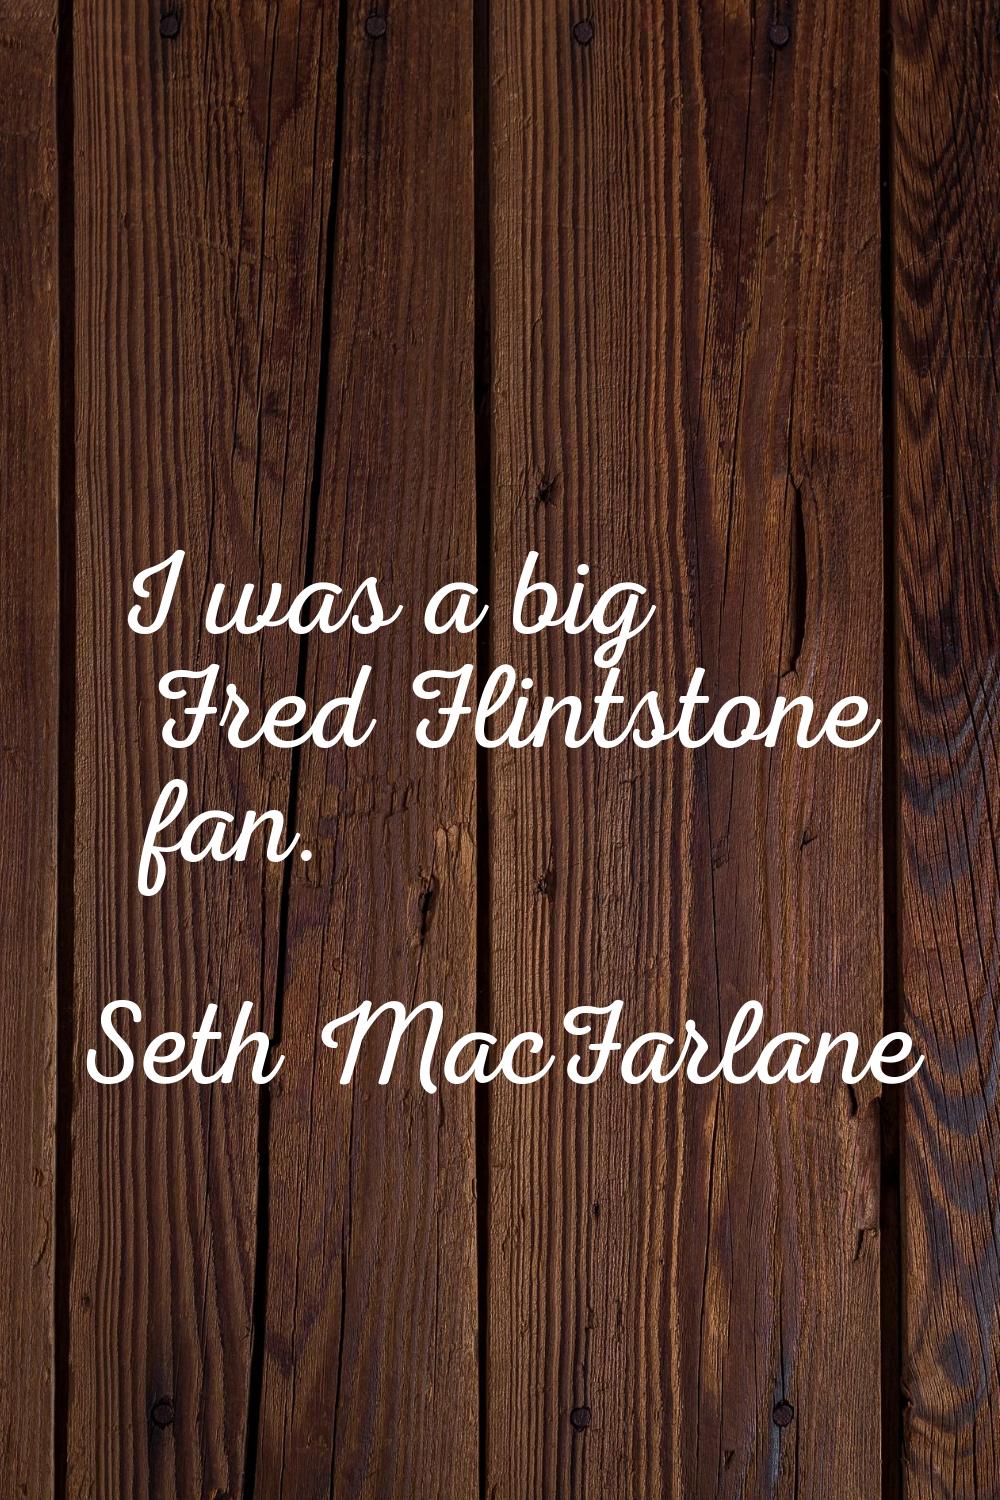 I was a big Fred Flintstone fan.